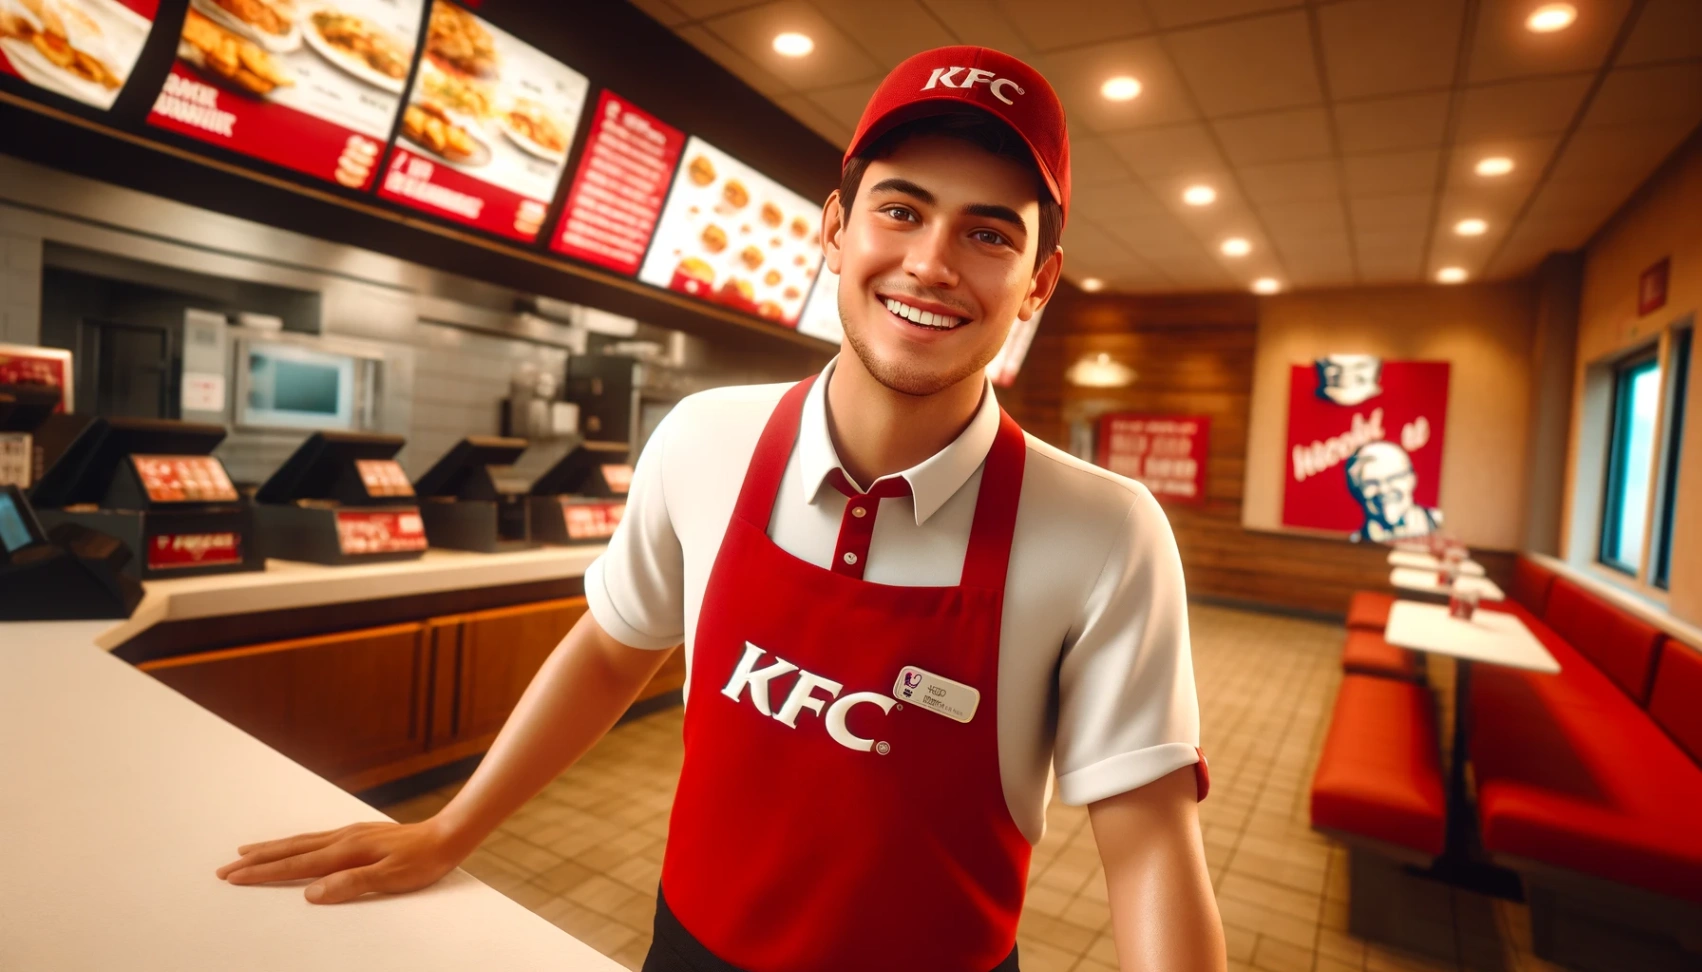 KFC - Erfahren Sie, wie Sie sich um offene Stellen bewerben können